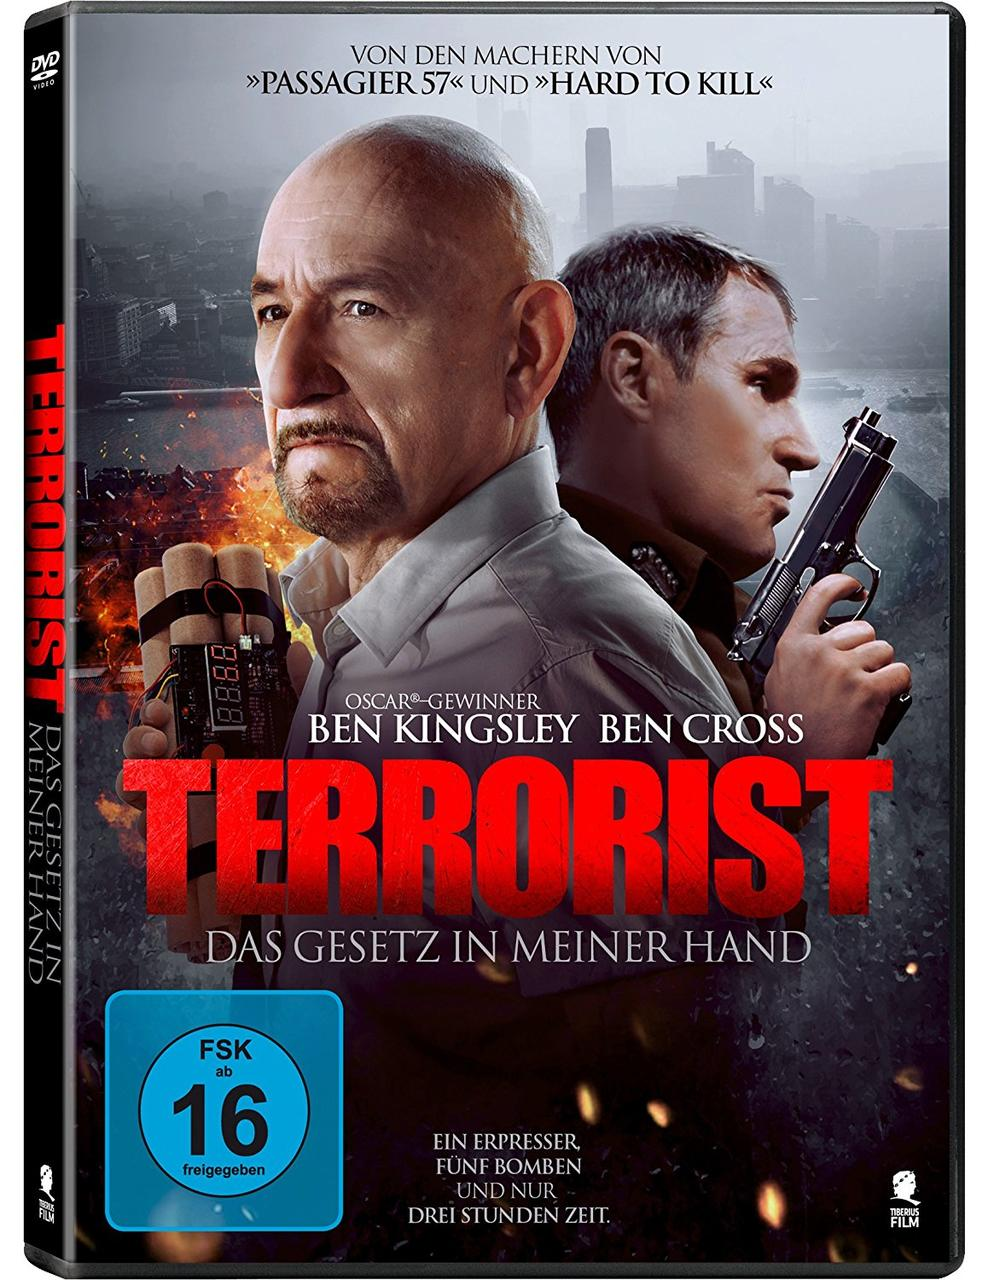 GESETZ TERRORIST MEINER HAND DAS - IN DVD